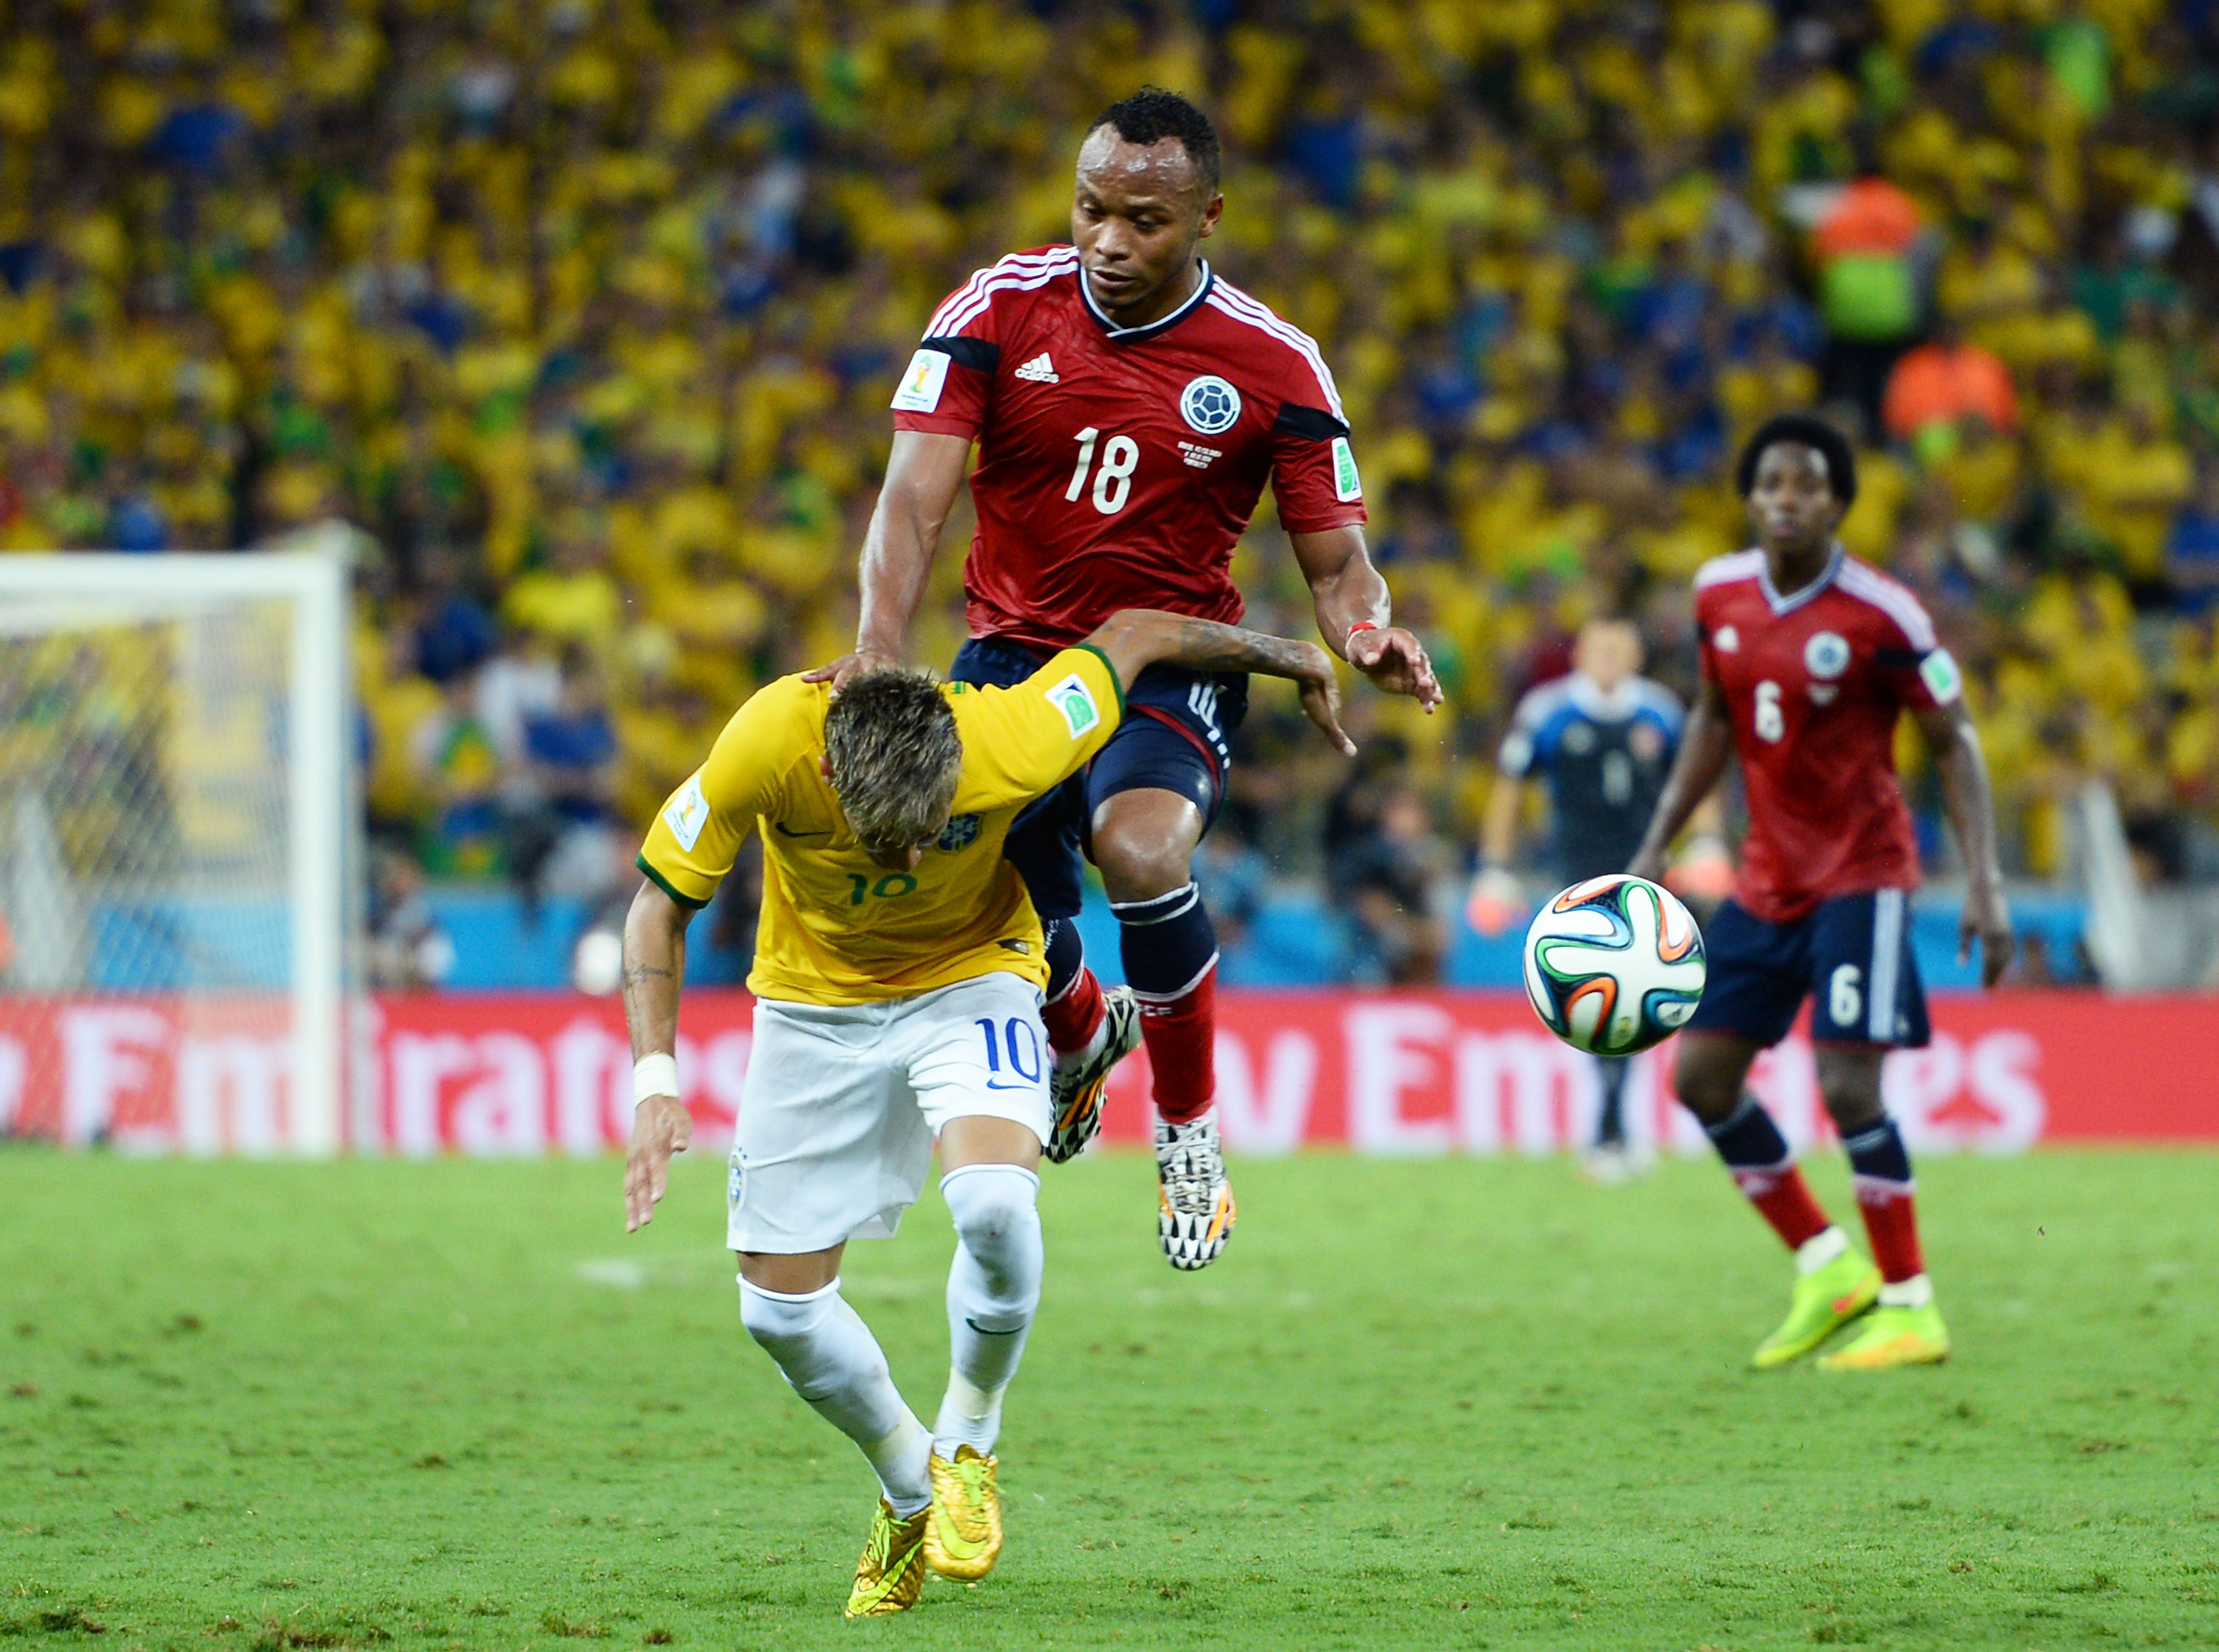 Zu Neymars Wirbelbruch und dem Faul – Juan Zuniga: „Ich hatte nicht gewollt, dass er sich einen Wirbel bricht.“ (Video)